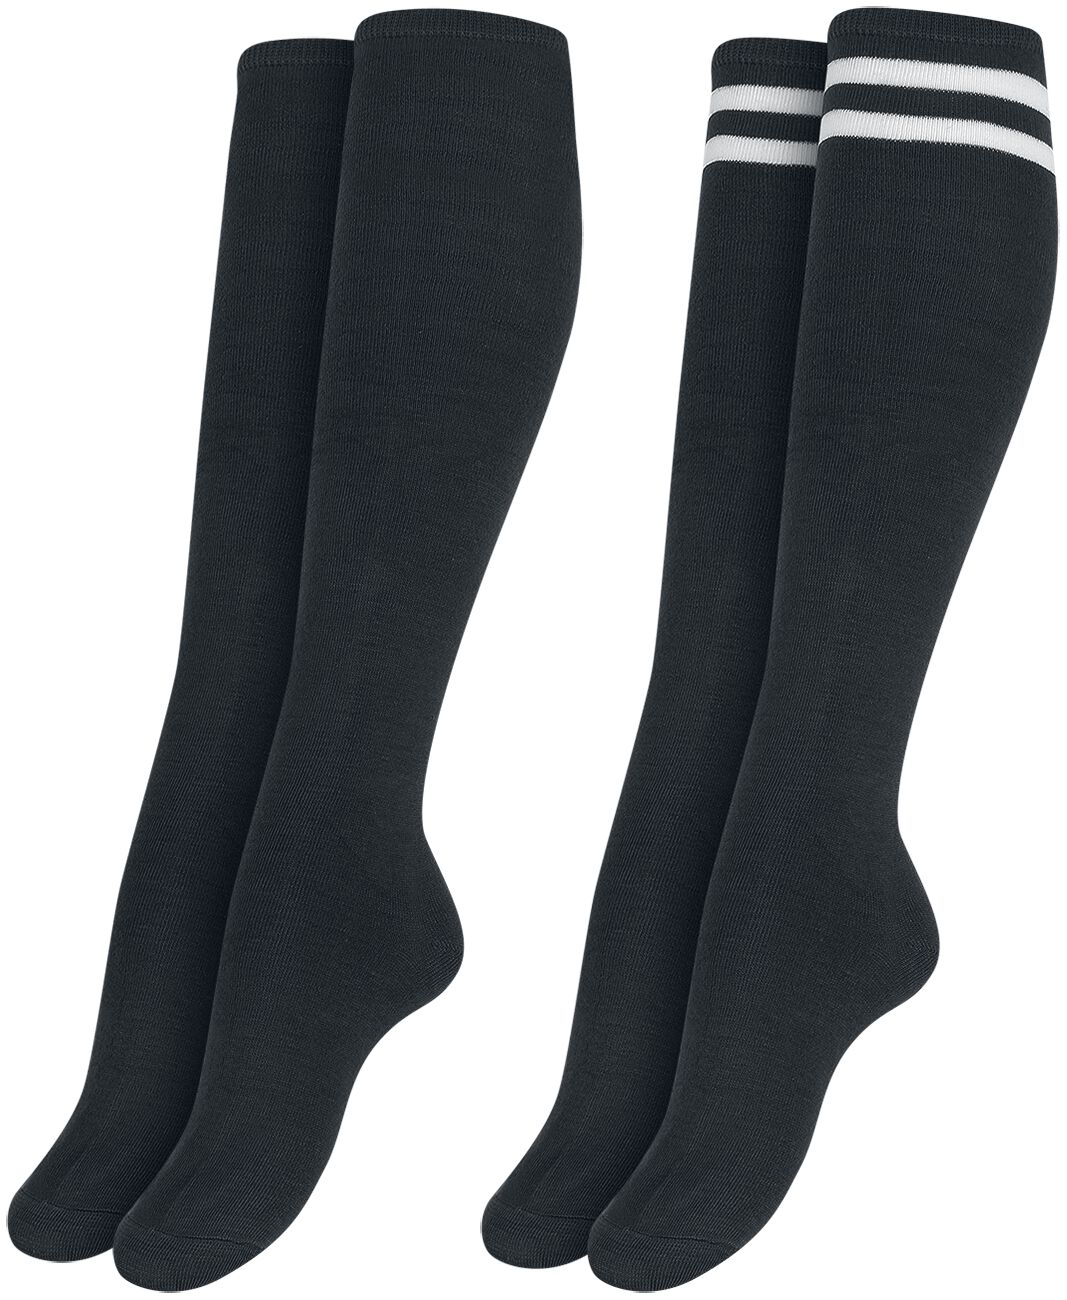 Urban Classics Ladies College Socks 2-Pack Kniestrümpfe schwarz in EU 35-38